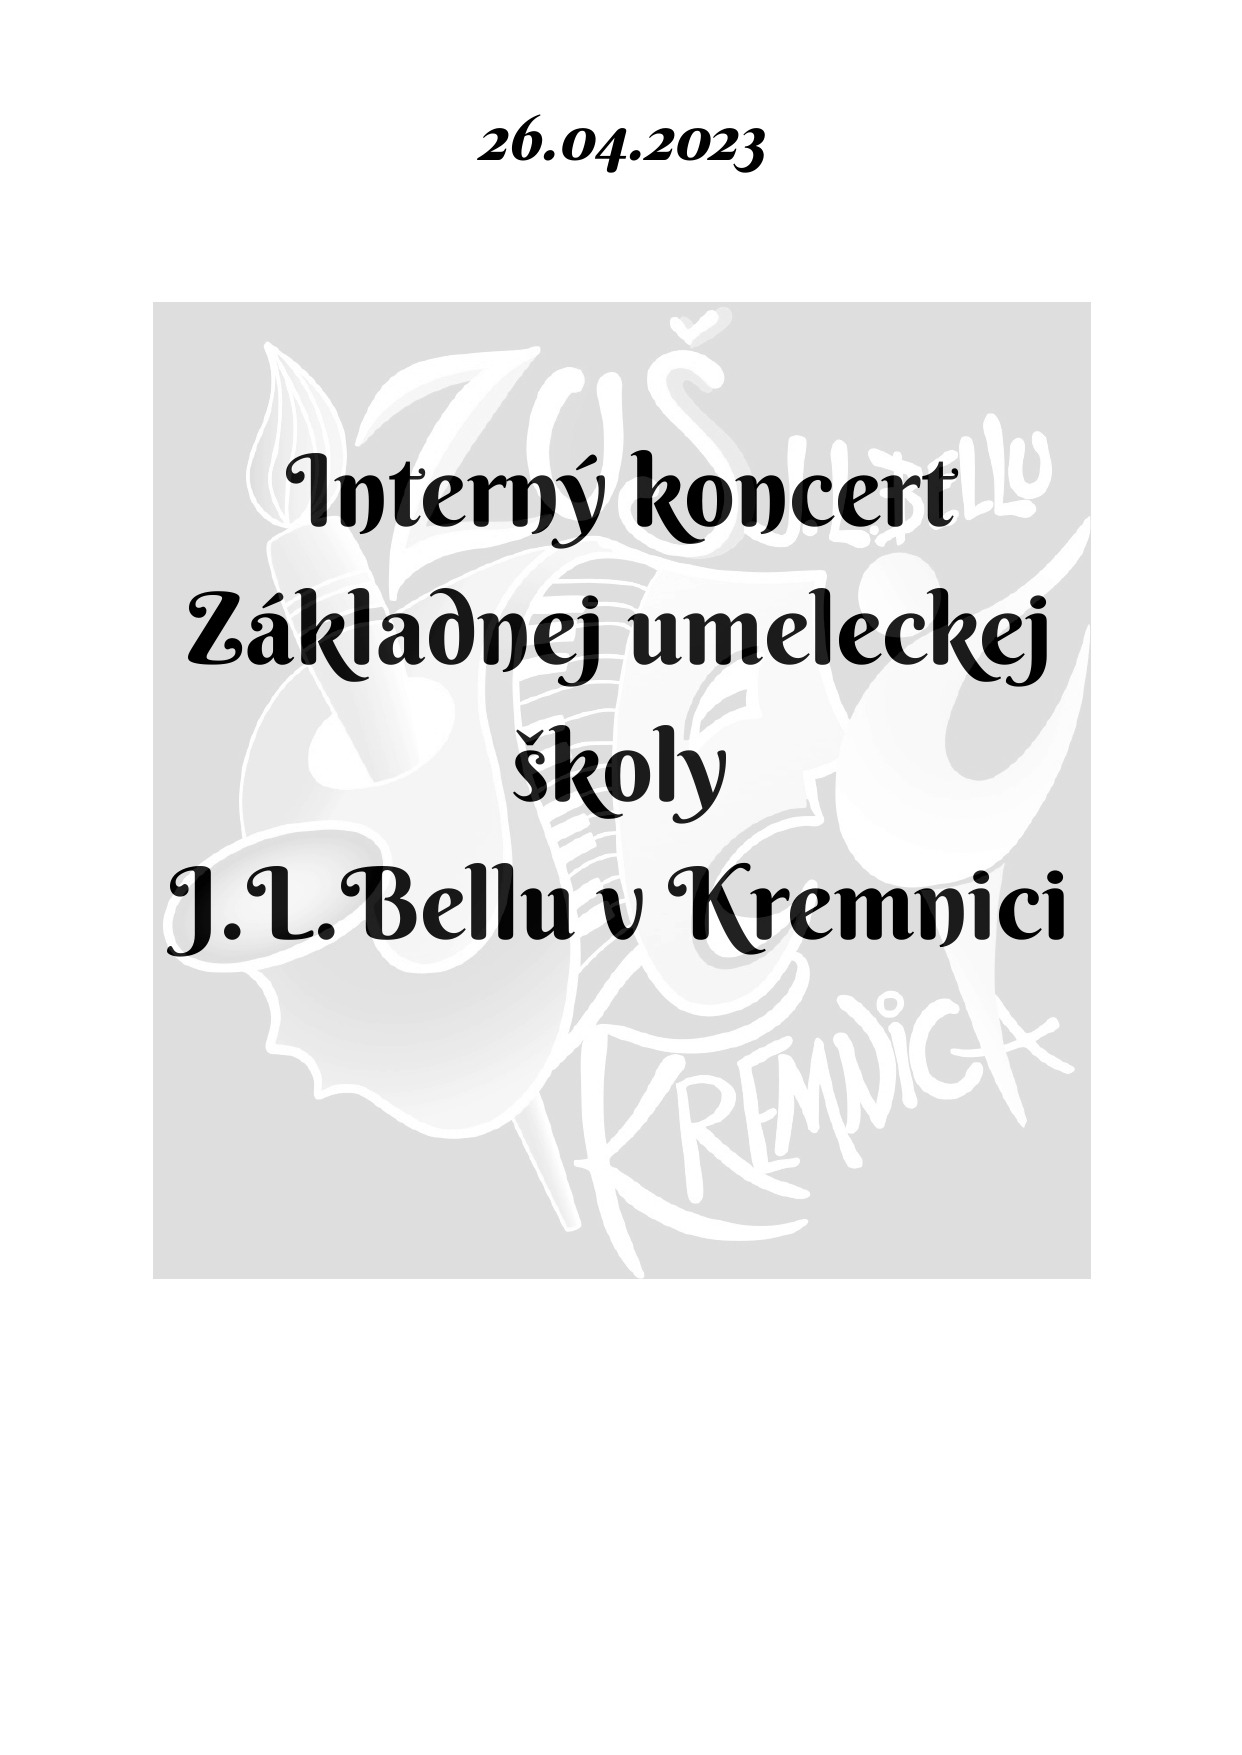 Pozvánka na interný koncert dnes 26.4. o 17:00 v sále ZUŠ, alebo online - Obrázok 1